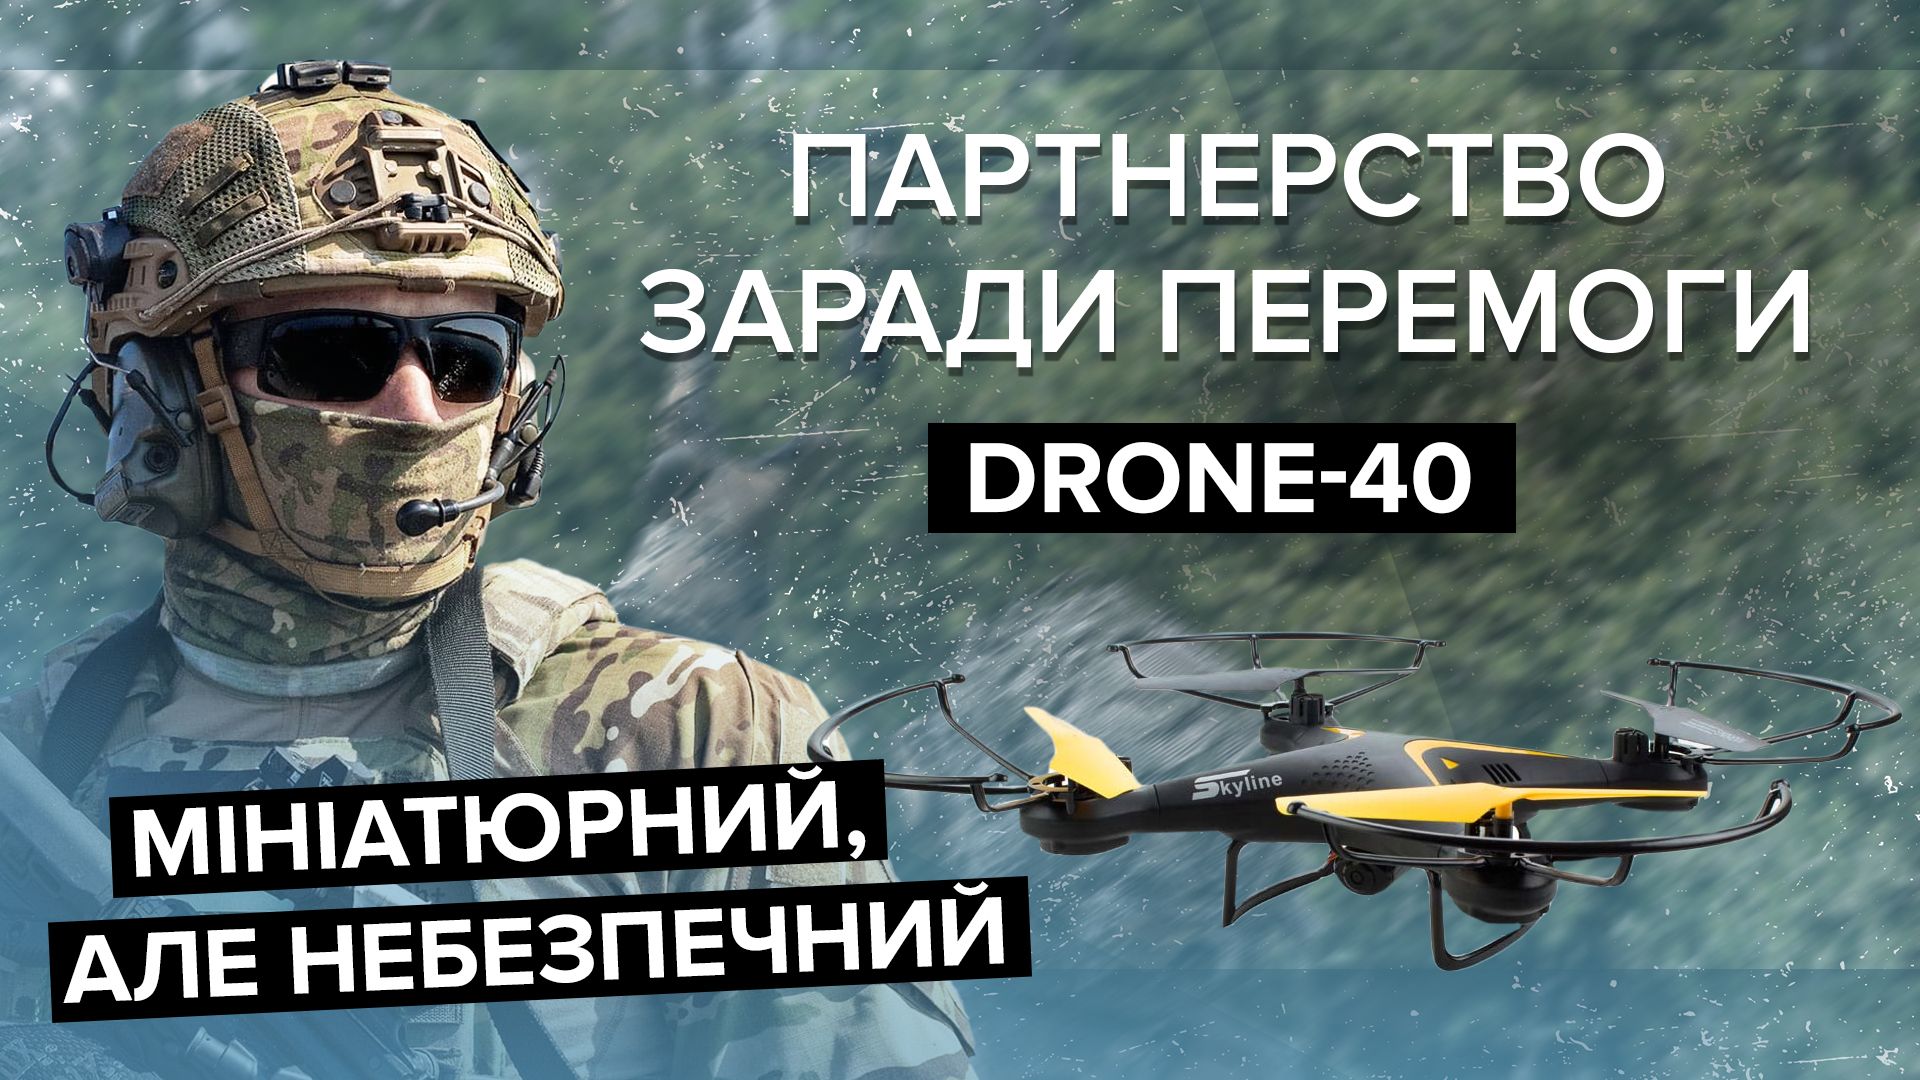 DefendTex Drone-40 – огляд та технічні характеристики